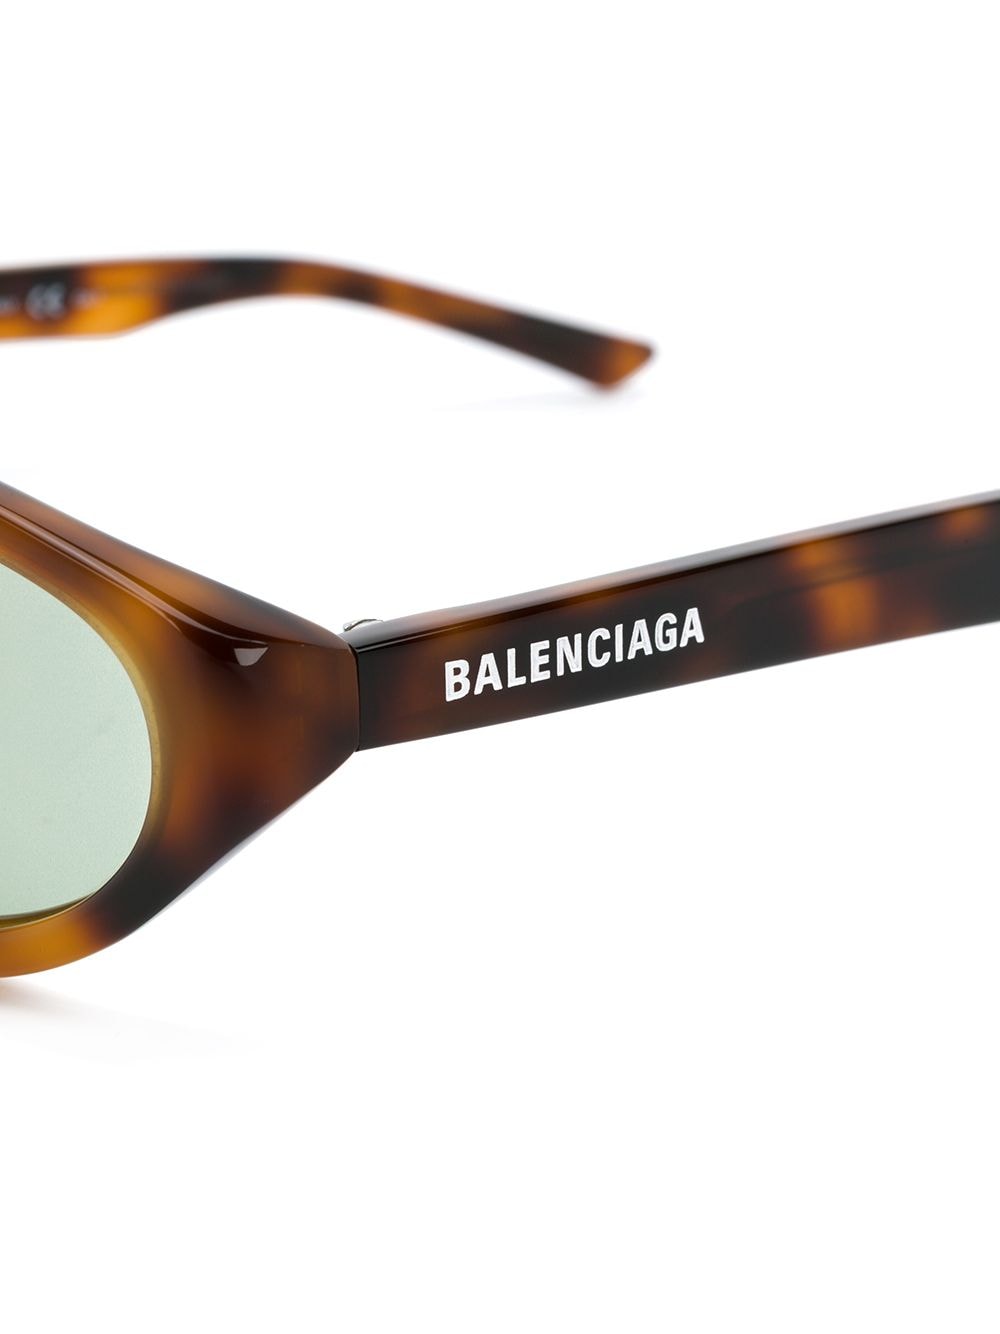 фото Balenciaga eyewear узкие солнцезащитные очки